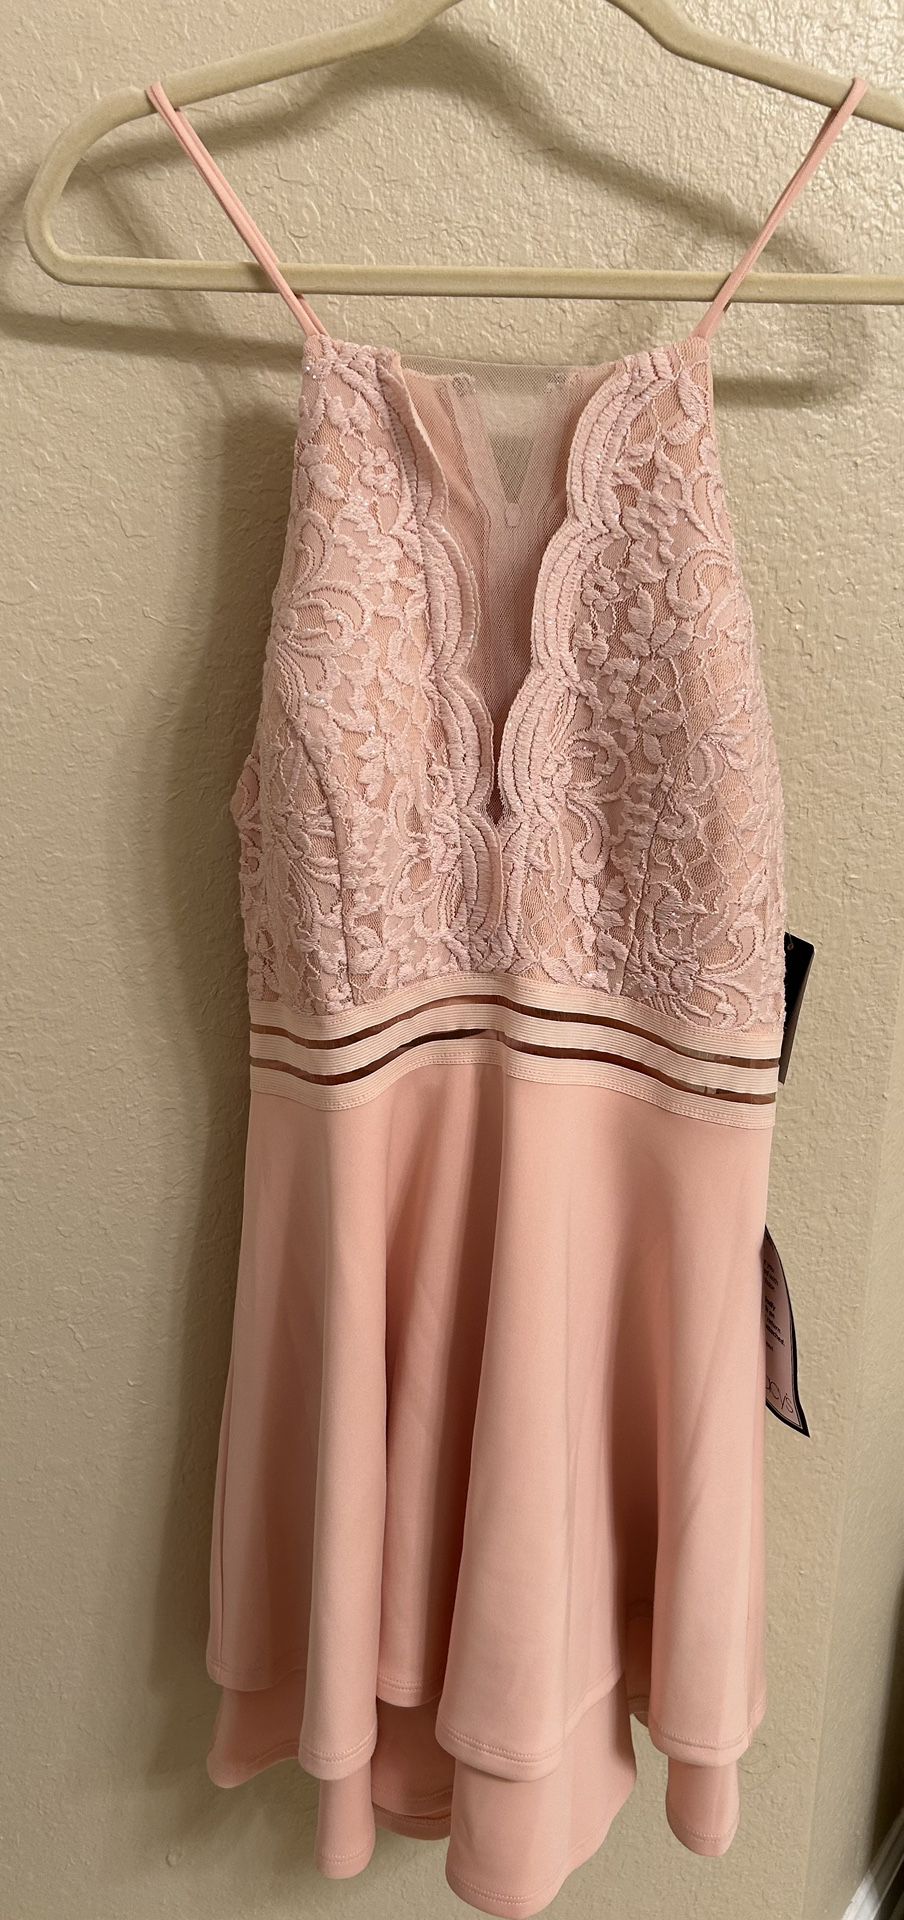 L Pink Formal Dress